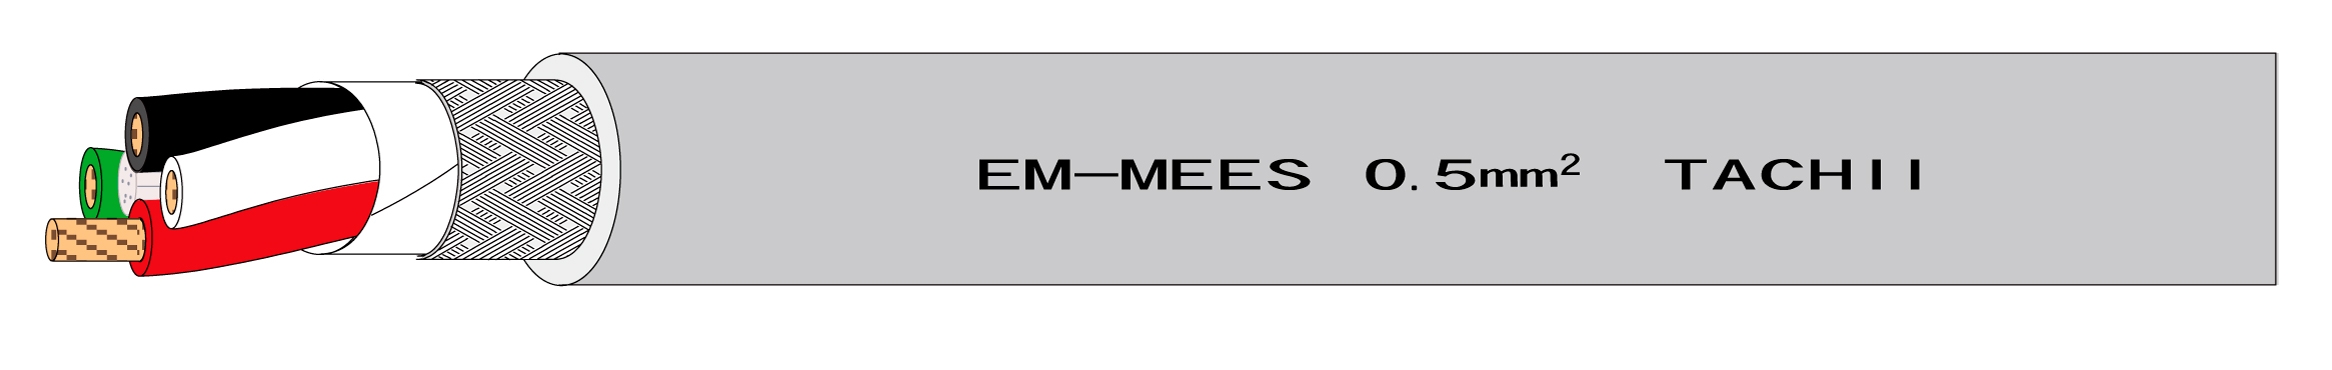 EM-MEES